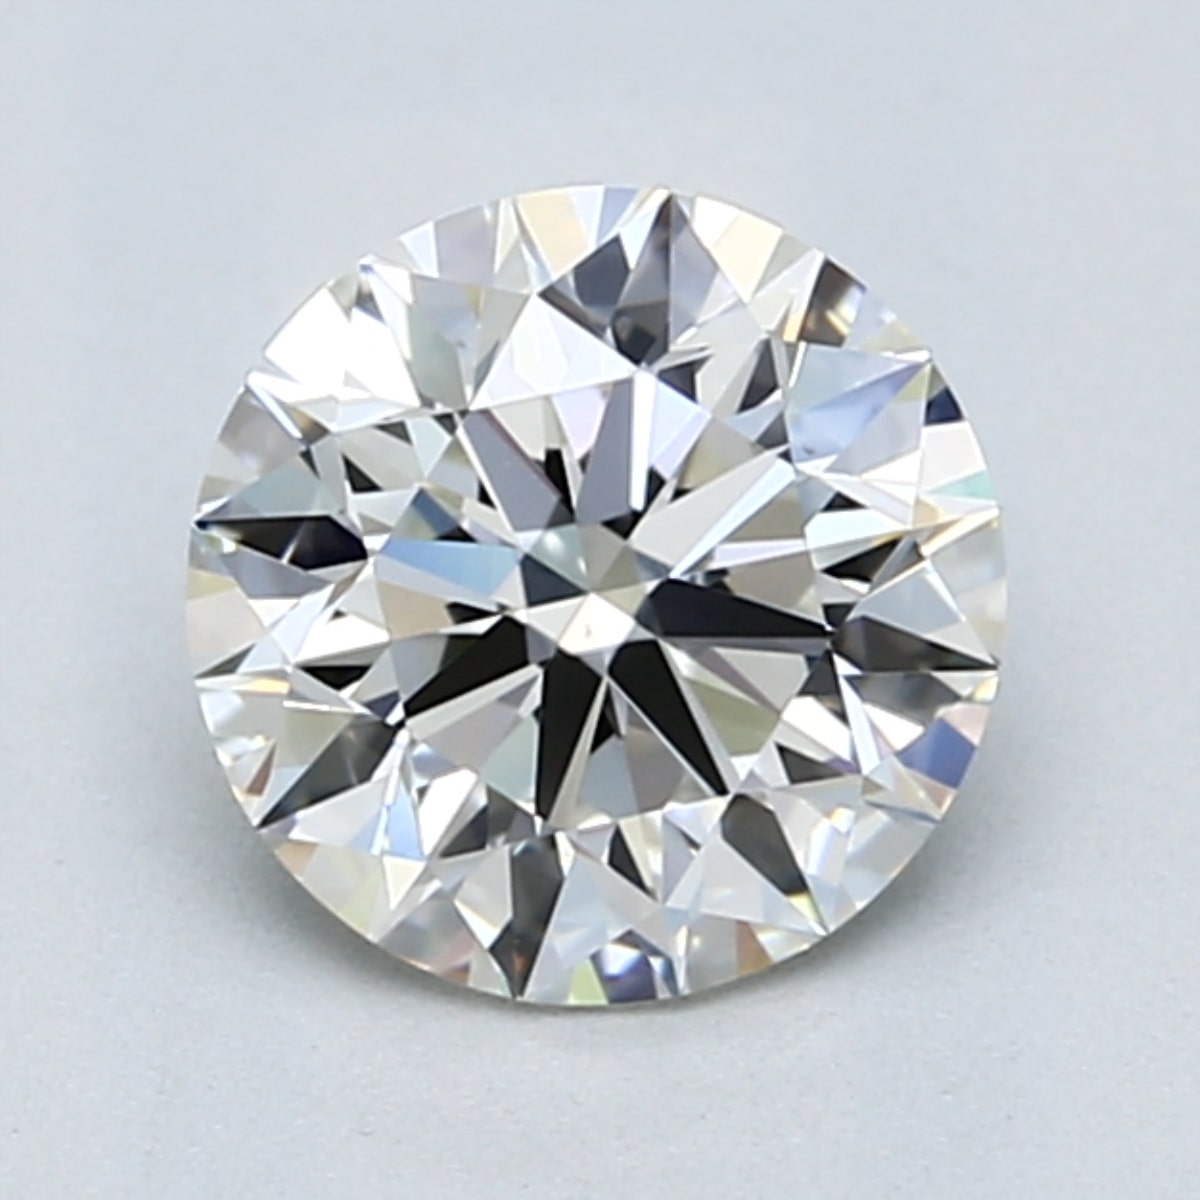 1.5 carat H color diamond